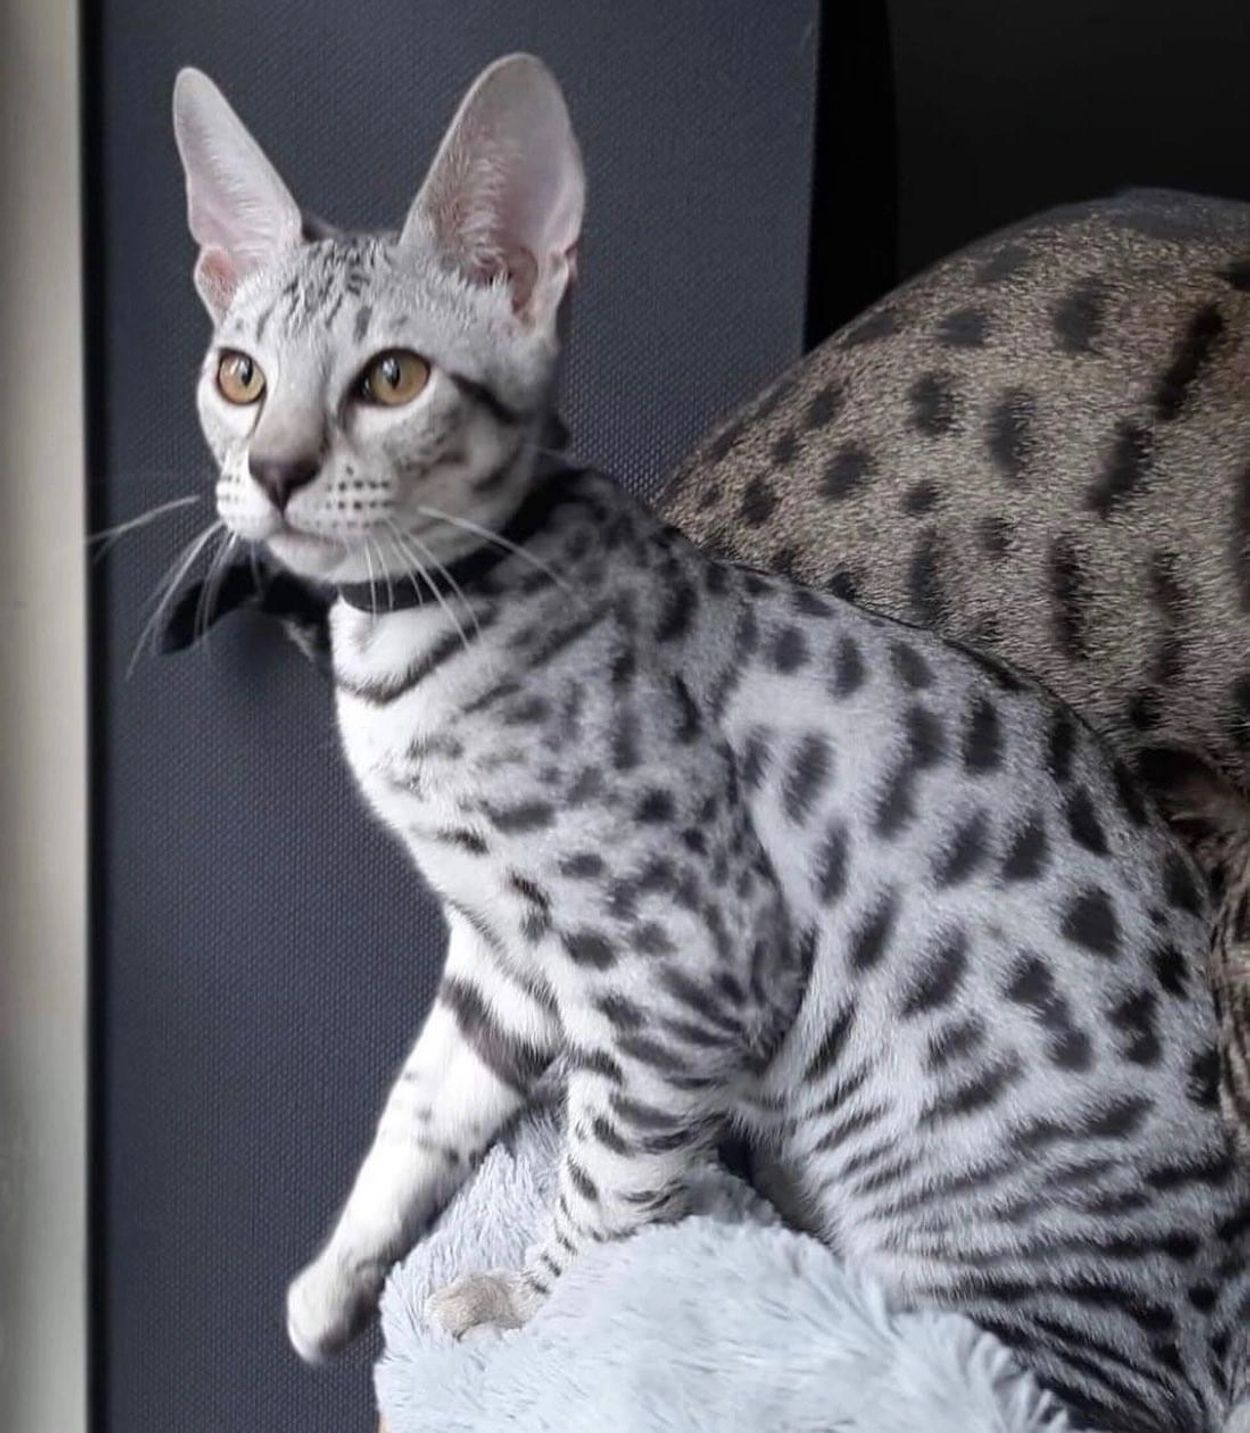 “Silver savannah cats for sale”  “Seattle Savannah Cats” “Seattle Savannahs”